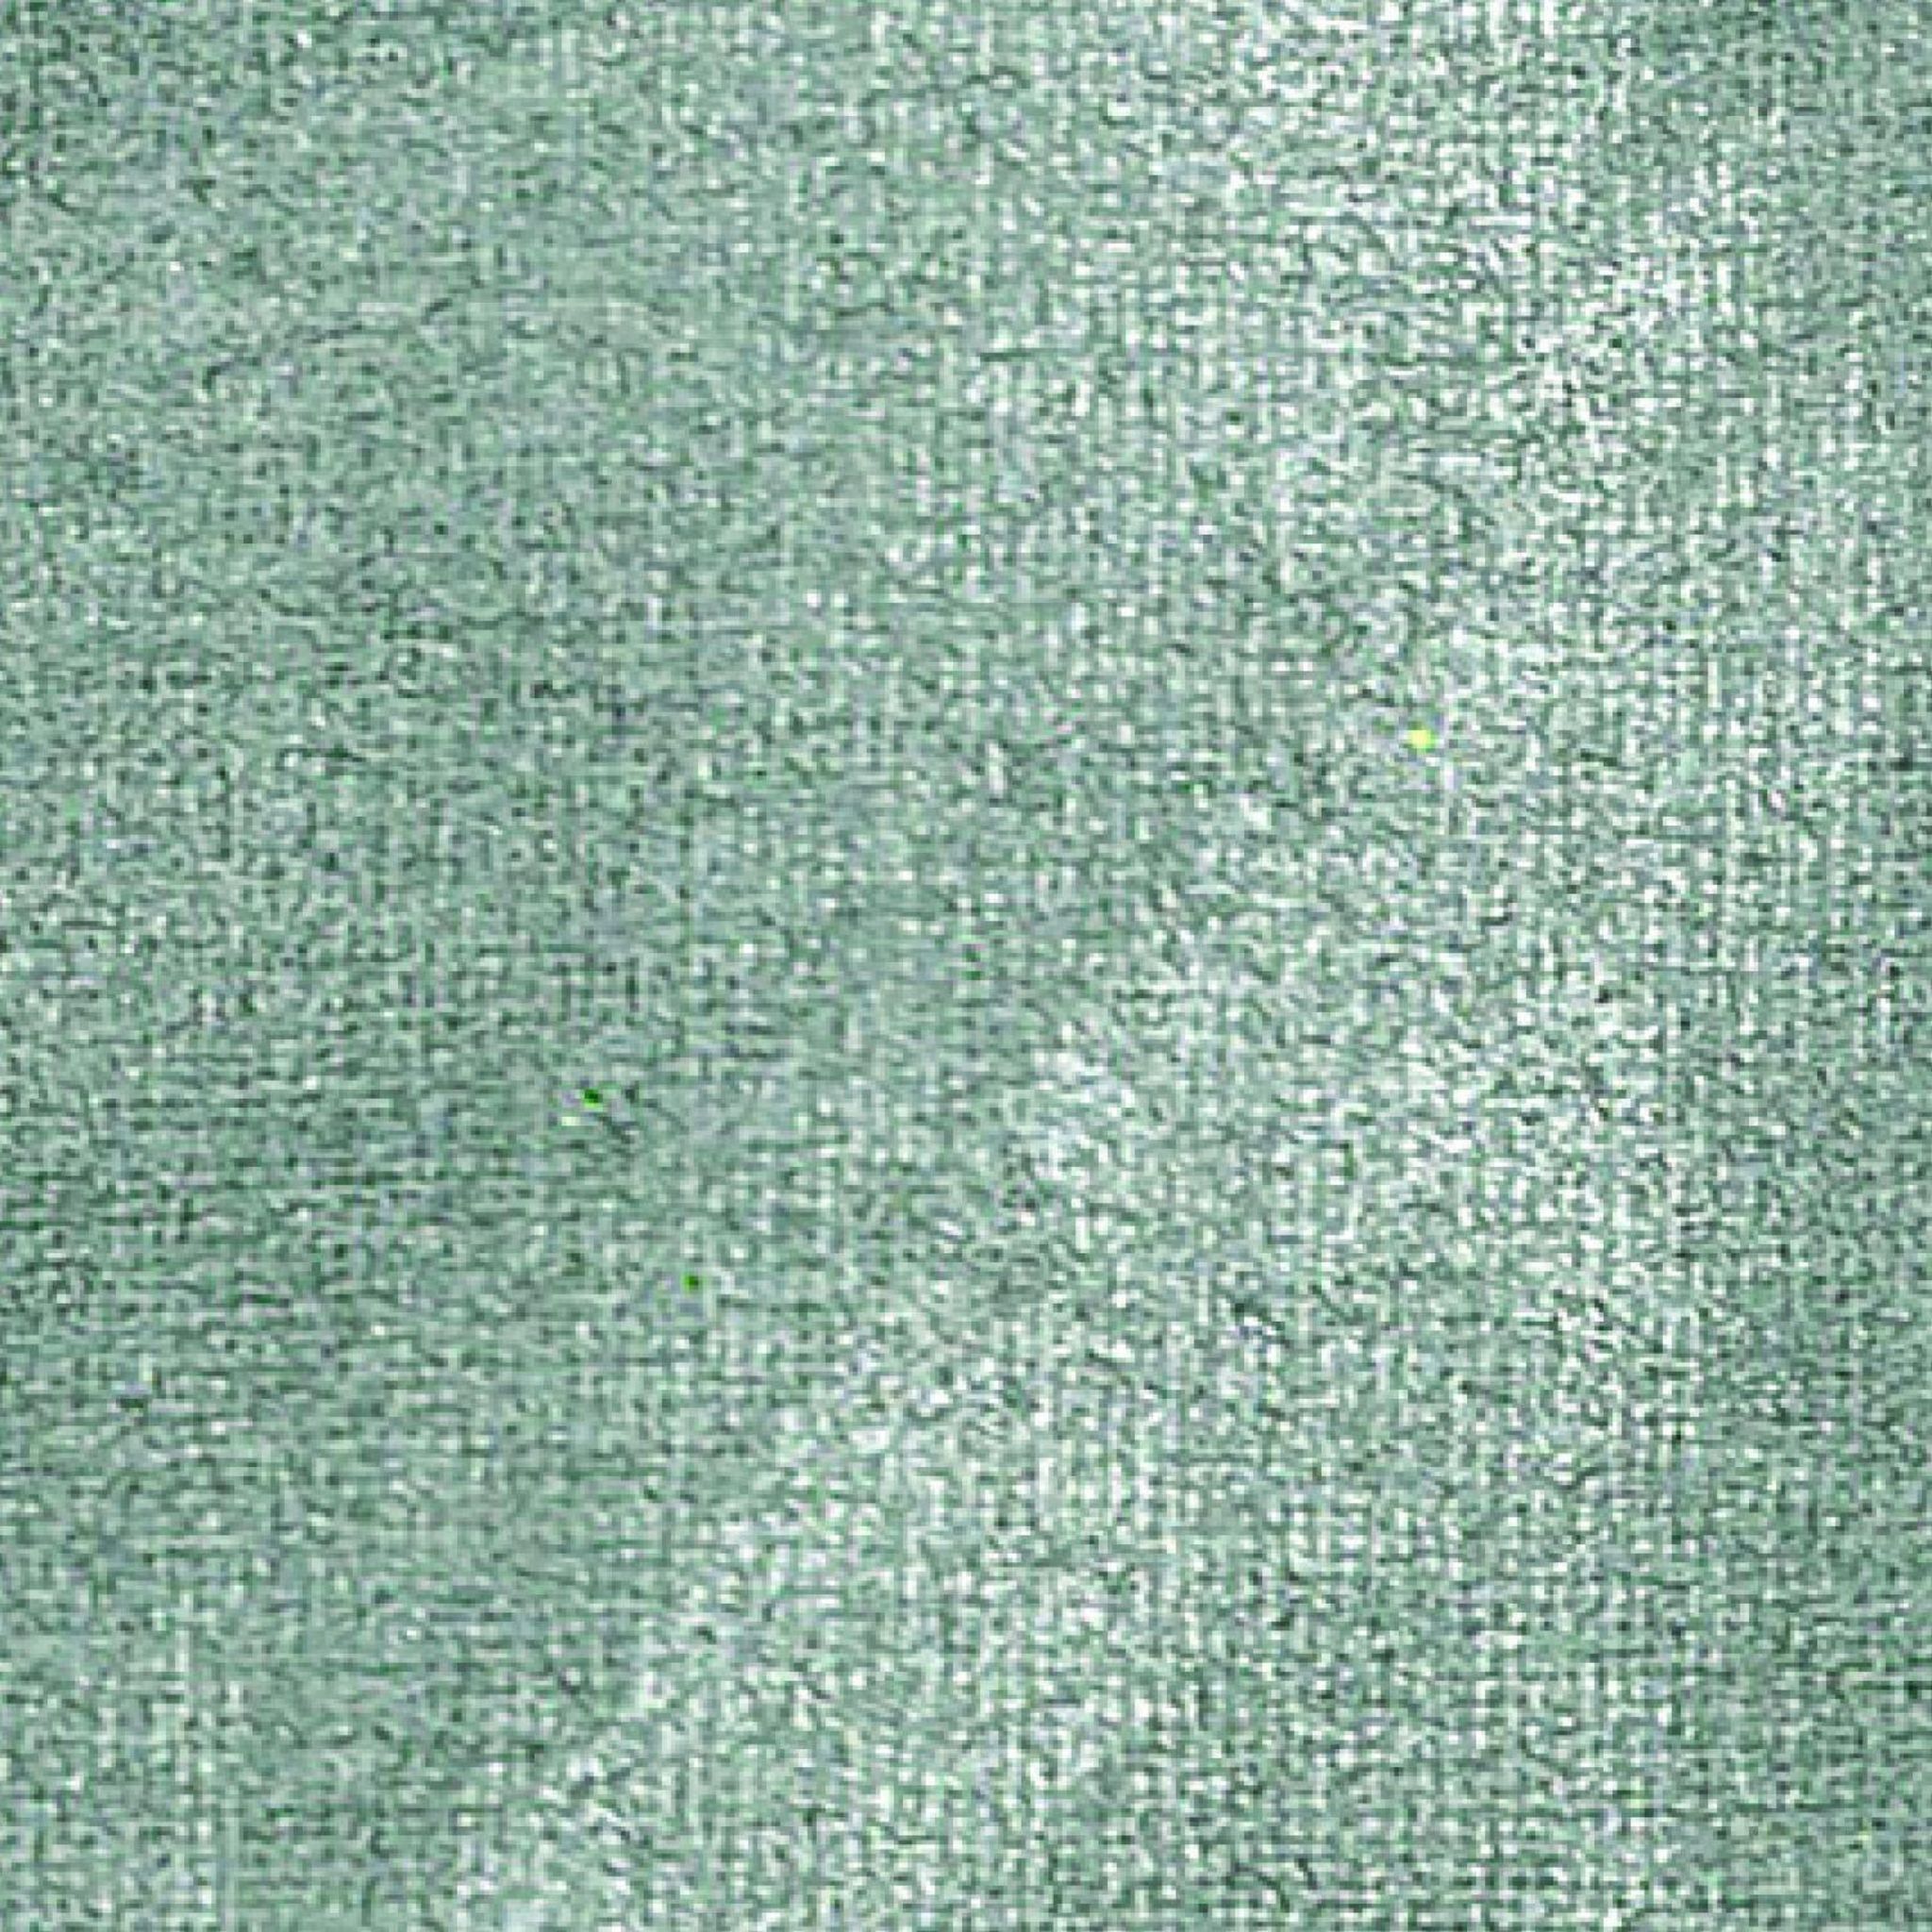 Peinture textile opaque métallique - Ivoire - 45 ml